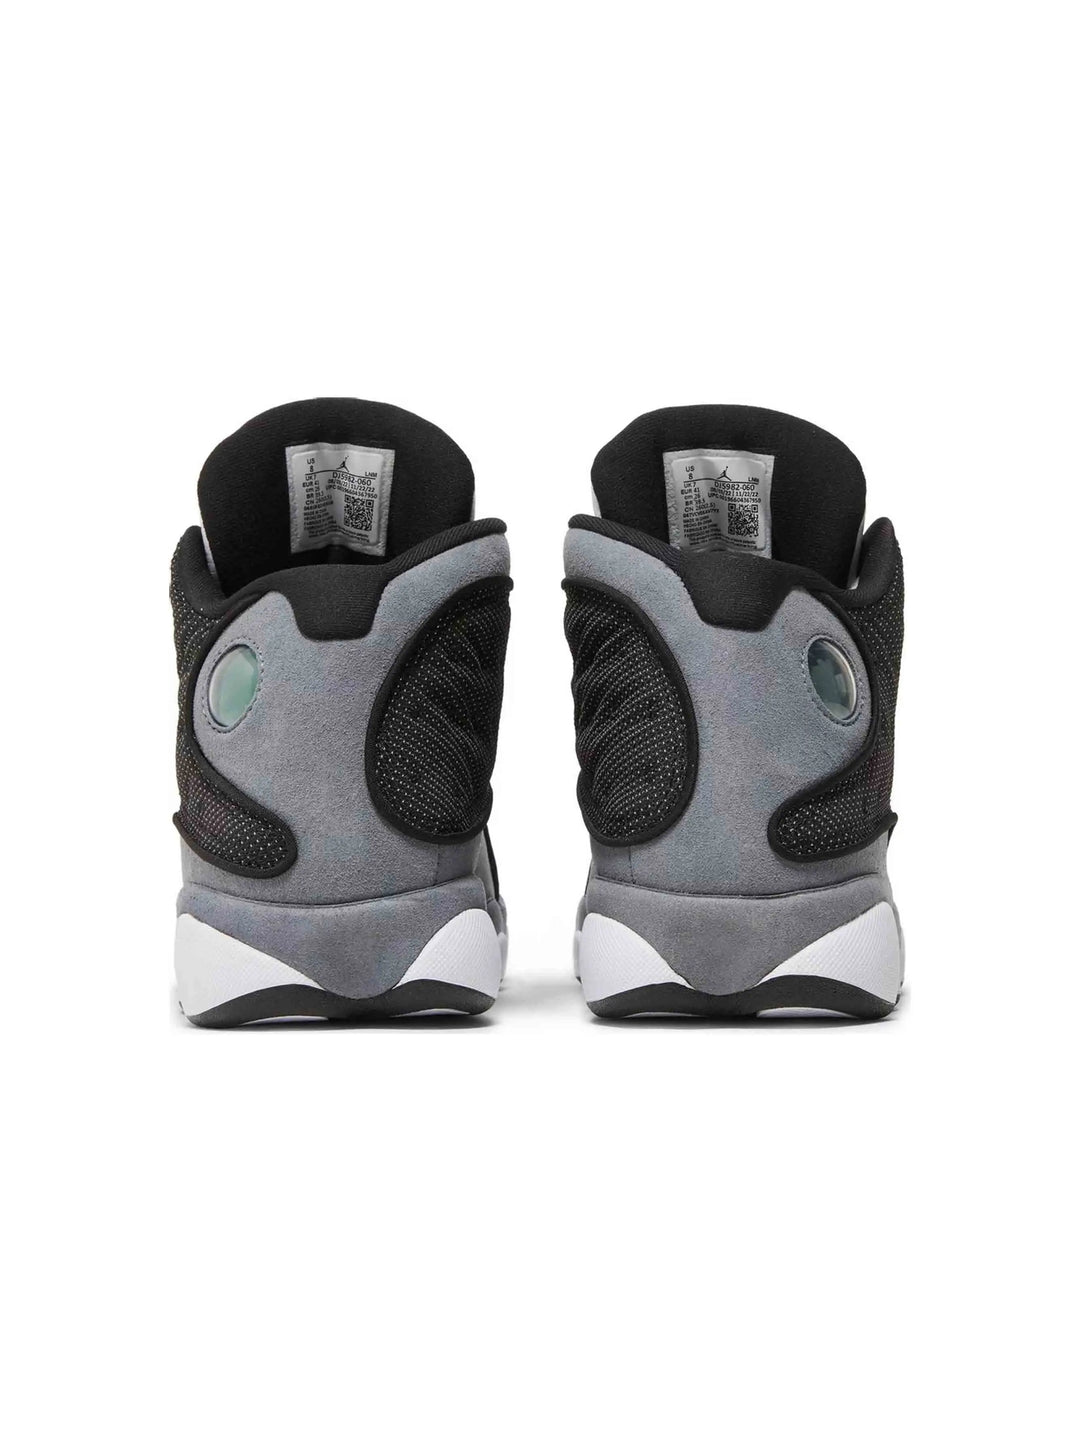 Nike Air Jordan 13 Retro Black Flint Prior